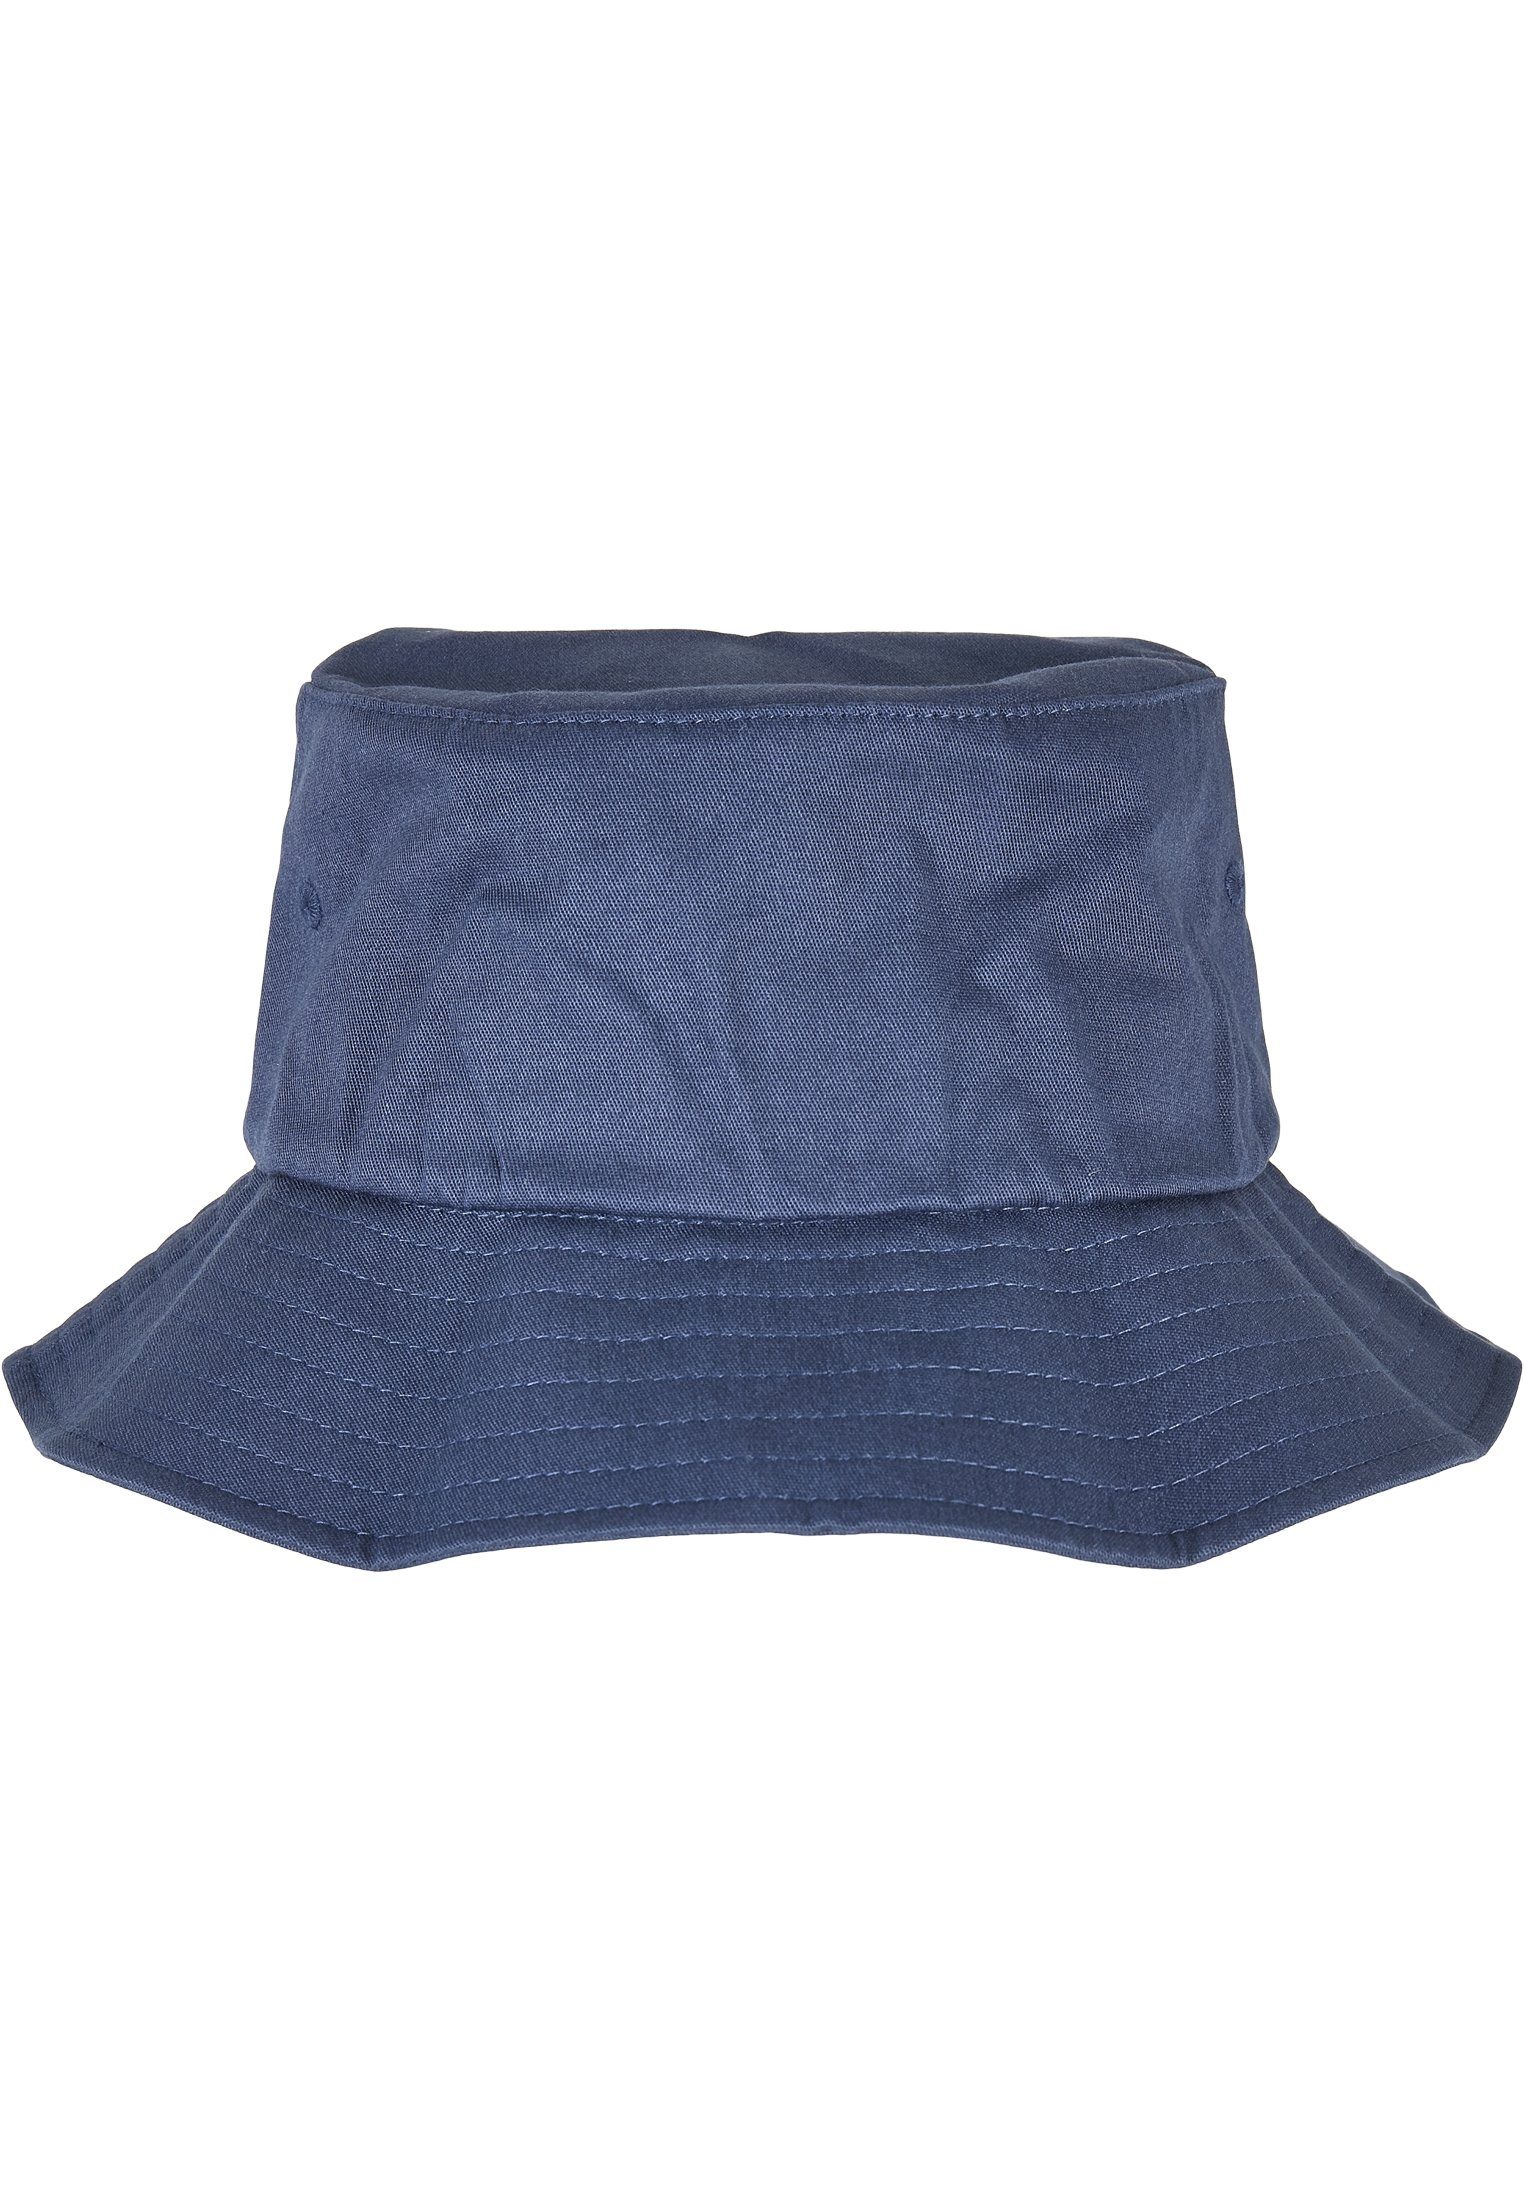 One Hat Cap Liner Flex Accessoires Bucket MisterTee